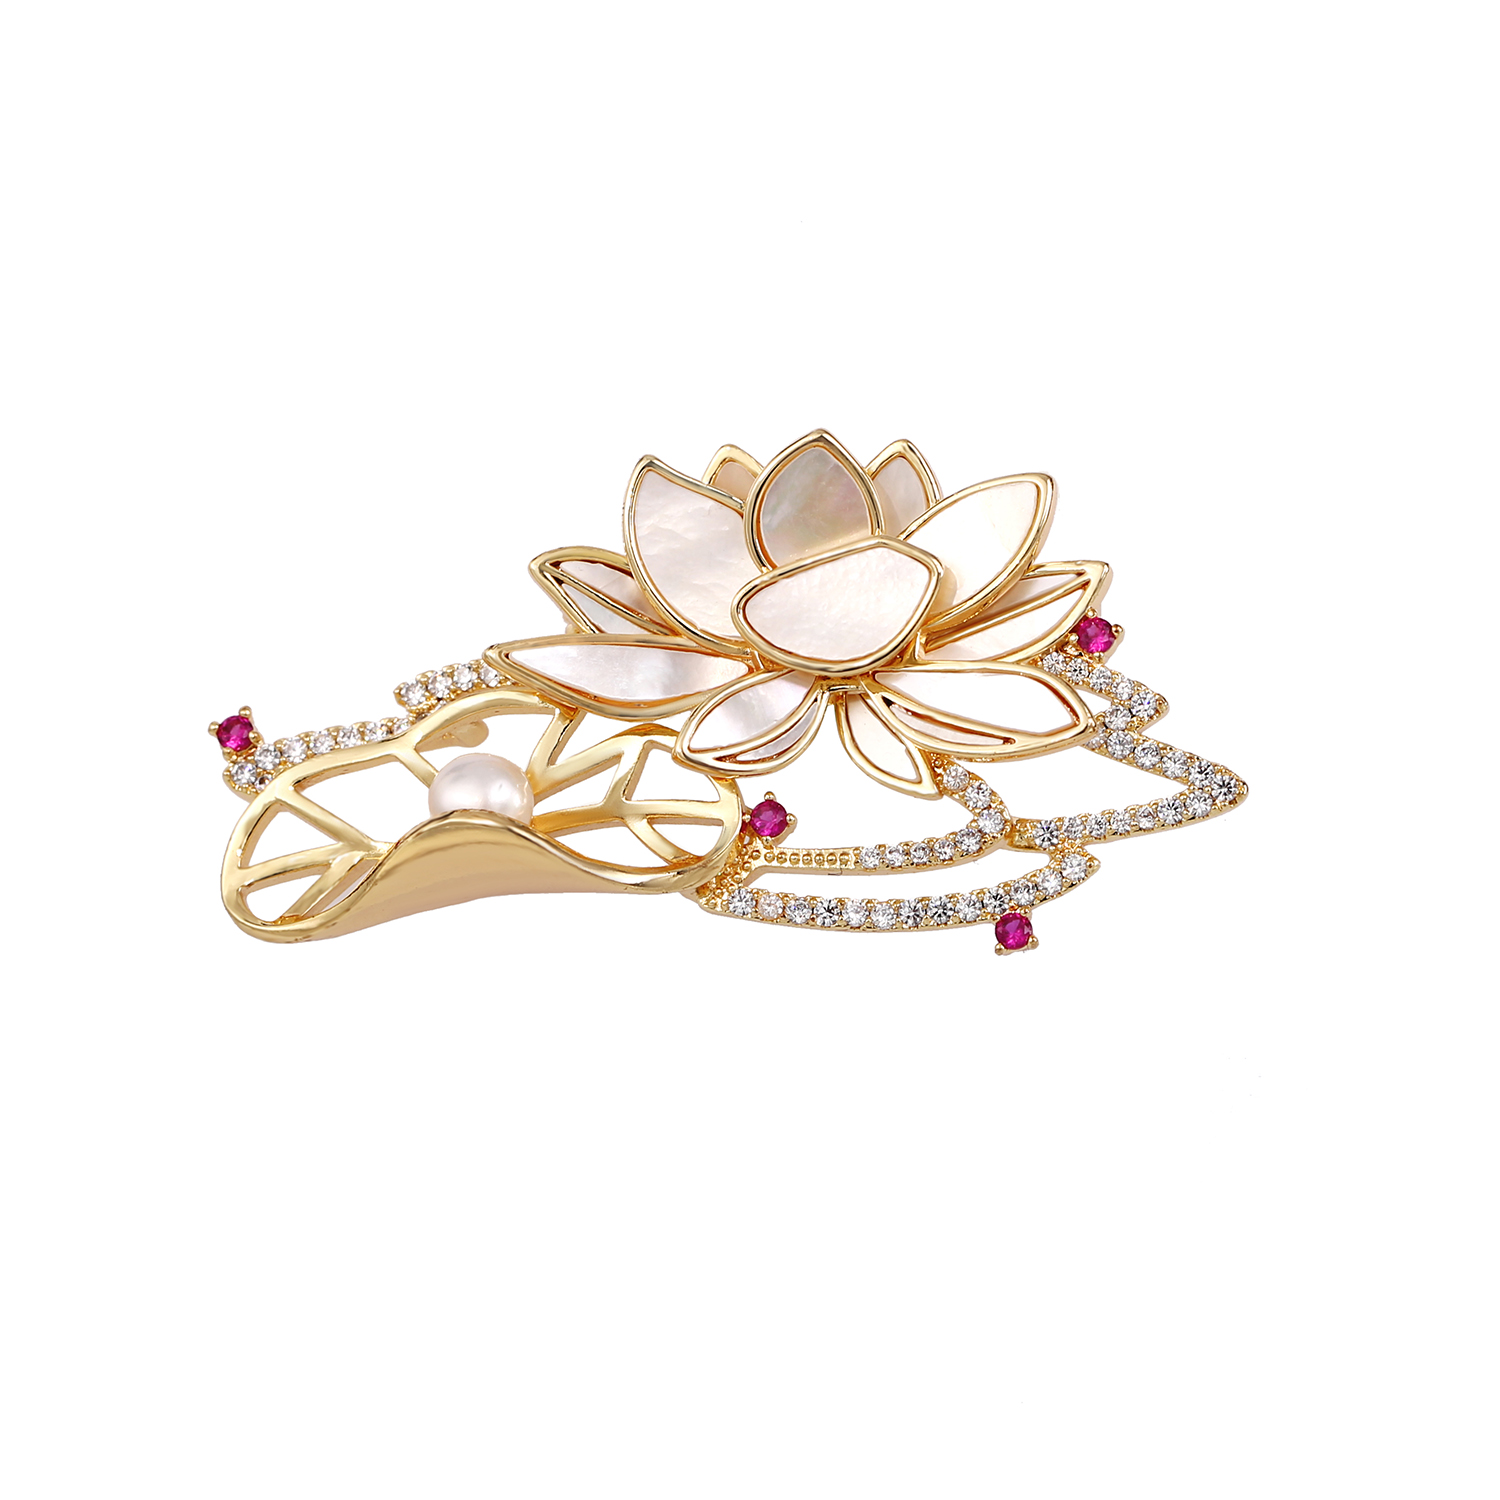 Broszka z kwiatem przypinka dla kobiet mężczyzn wesele niezbędnik dla dżentelmena ręcznie robiona kryształowa perła w kształcie kwiatu przypinka do klapy garnituru